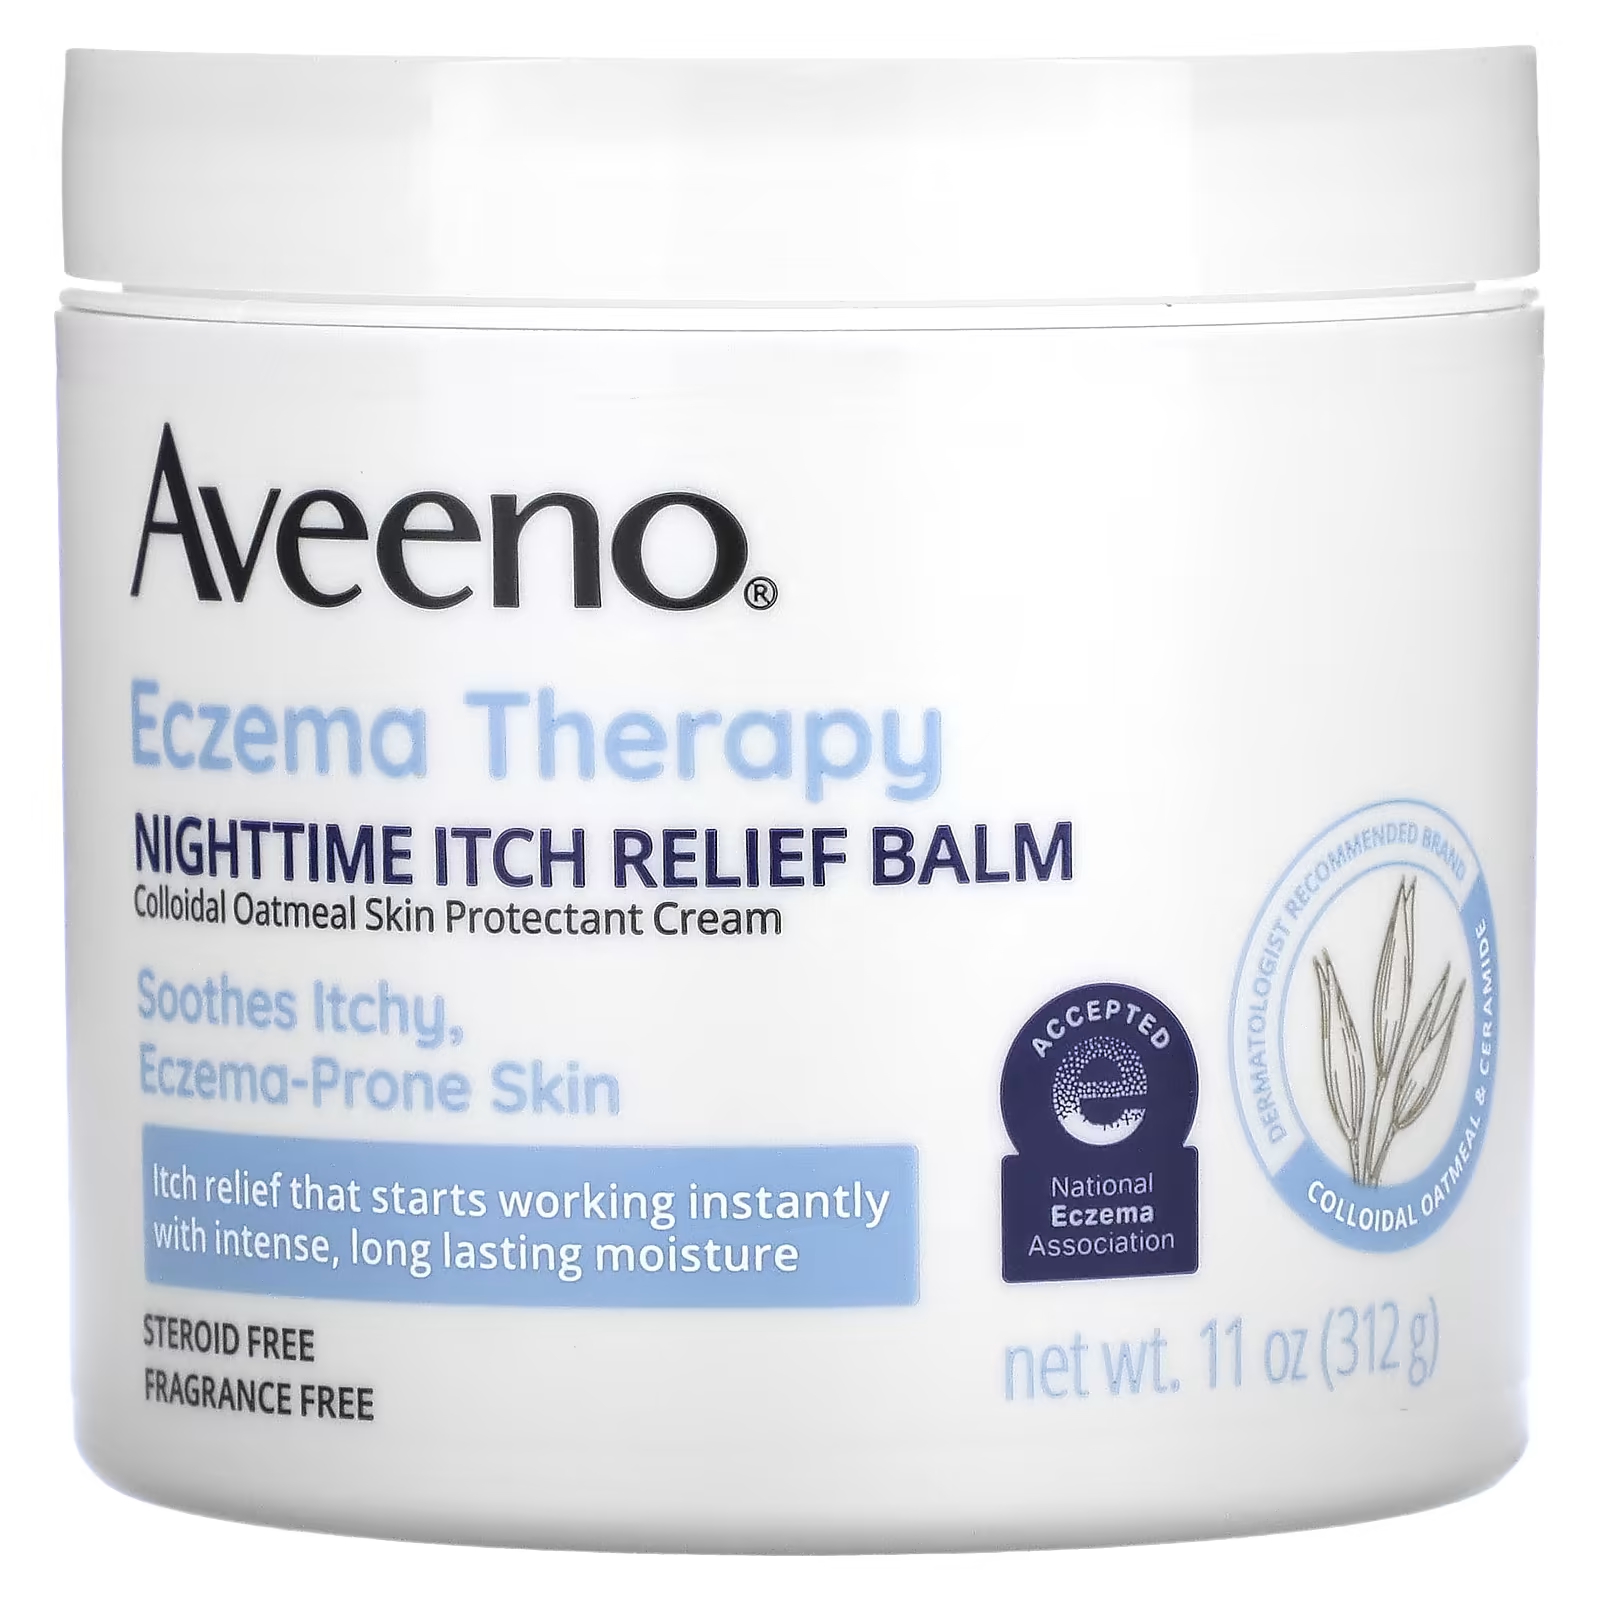 Бальзам Aveeno Eczema Therapy для снятия ночного зуда